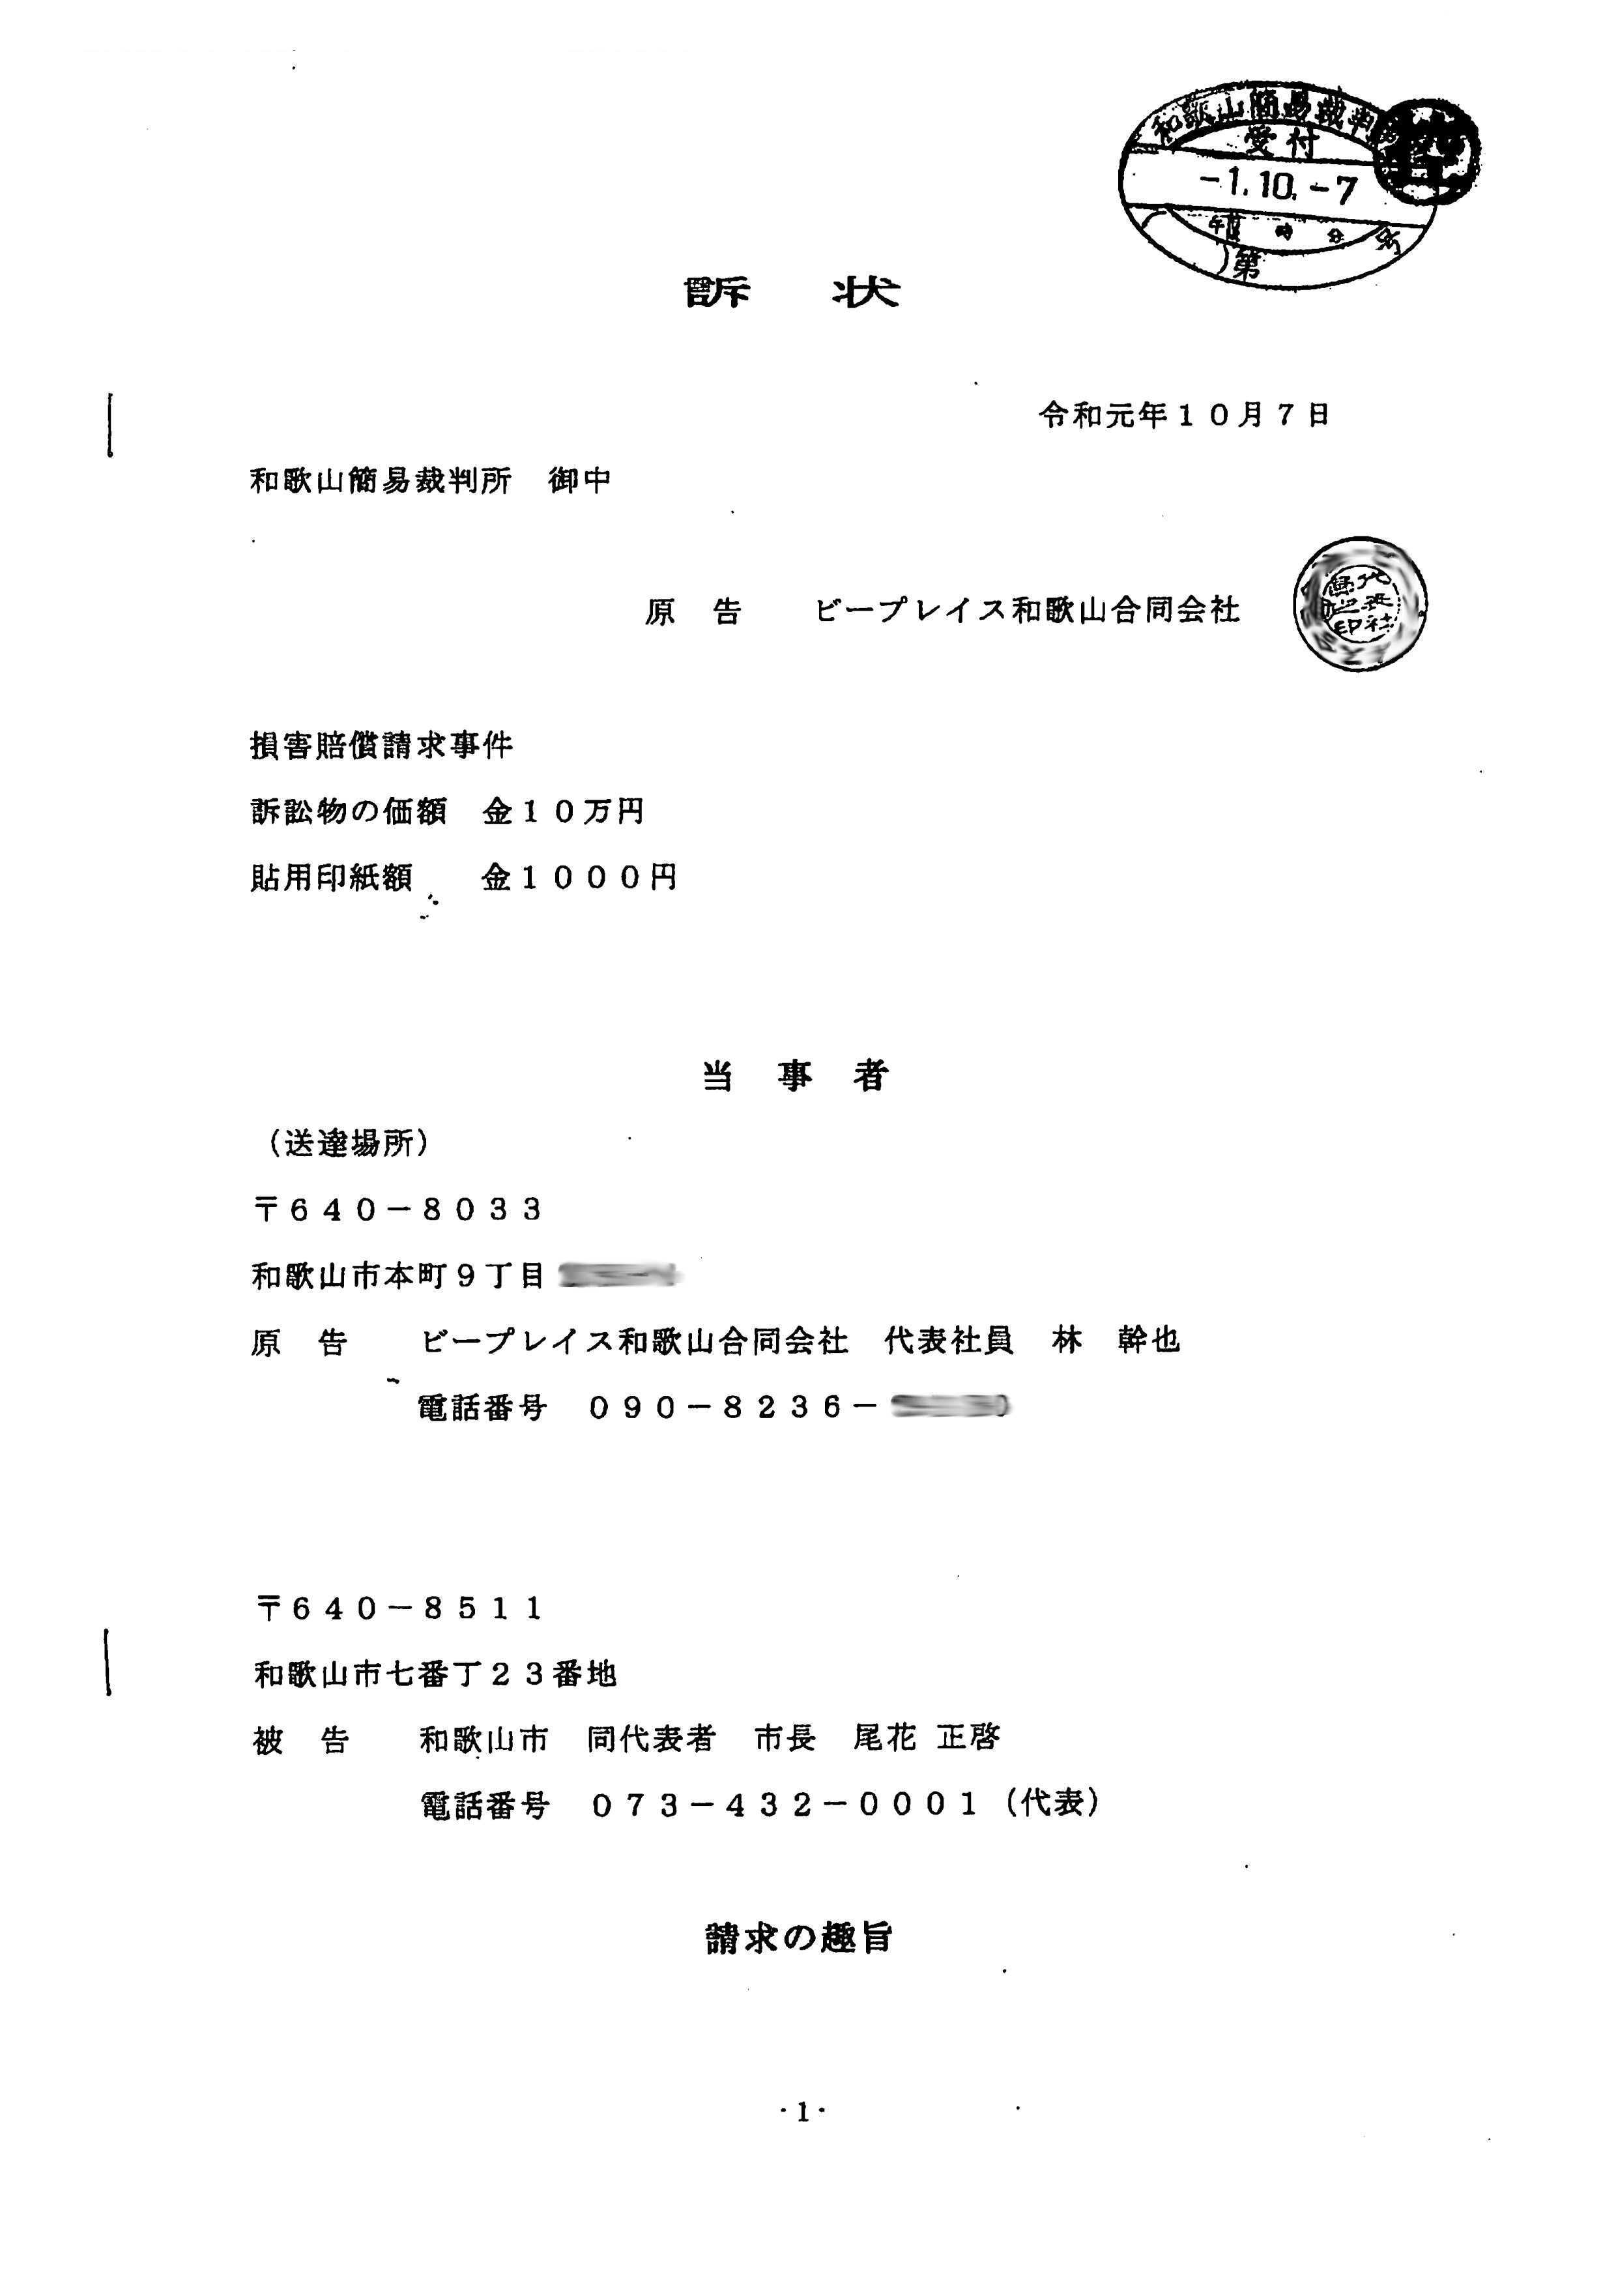 和歌山市、1400枚黒塗り情報開示…「税金94億円」ツタヤ図書館含む再開発で疑惑の画像1